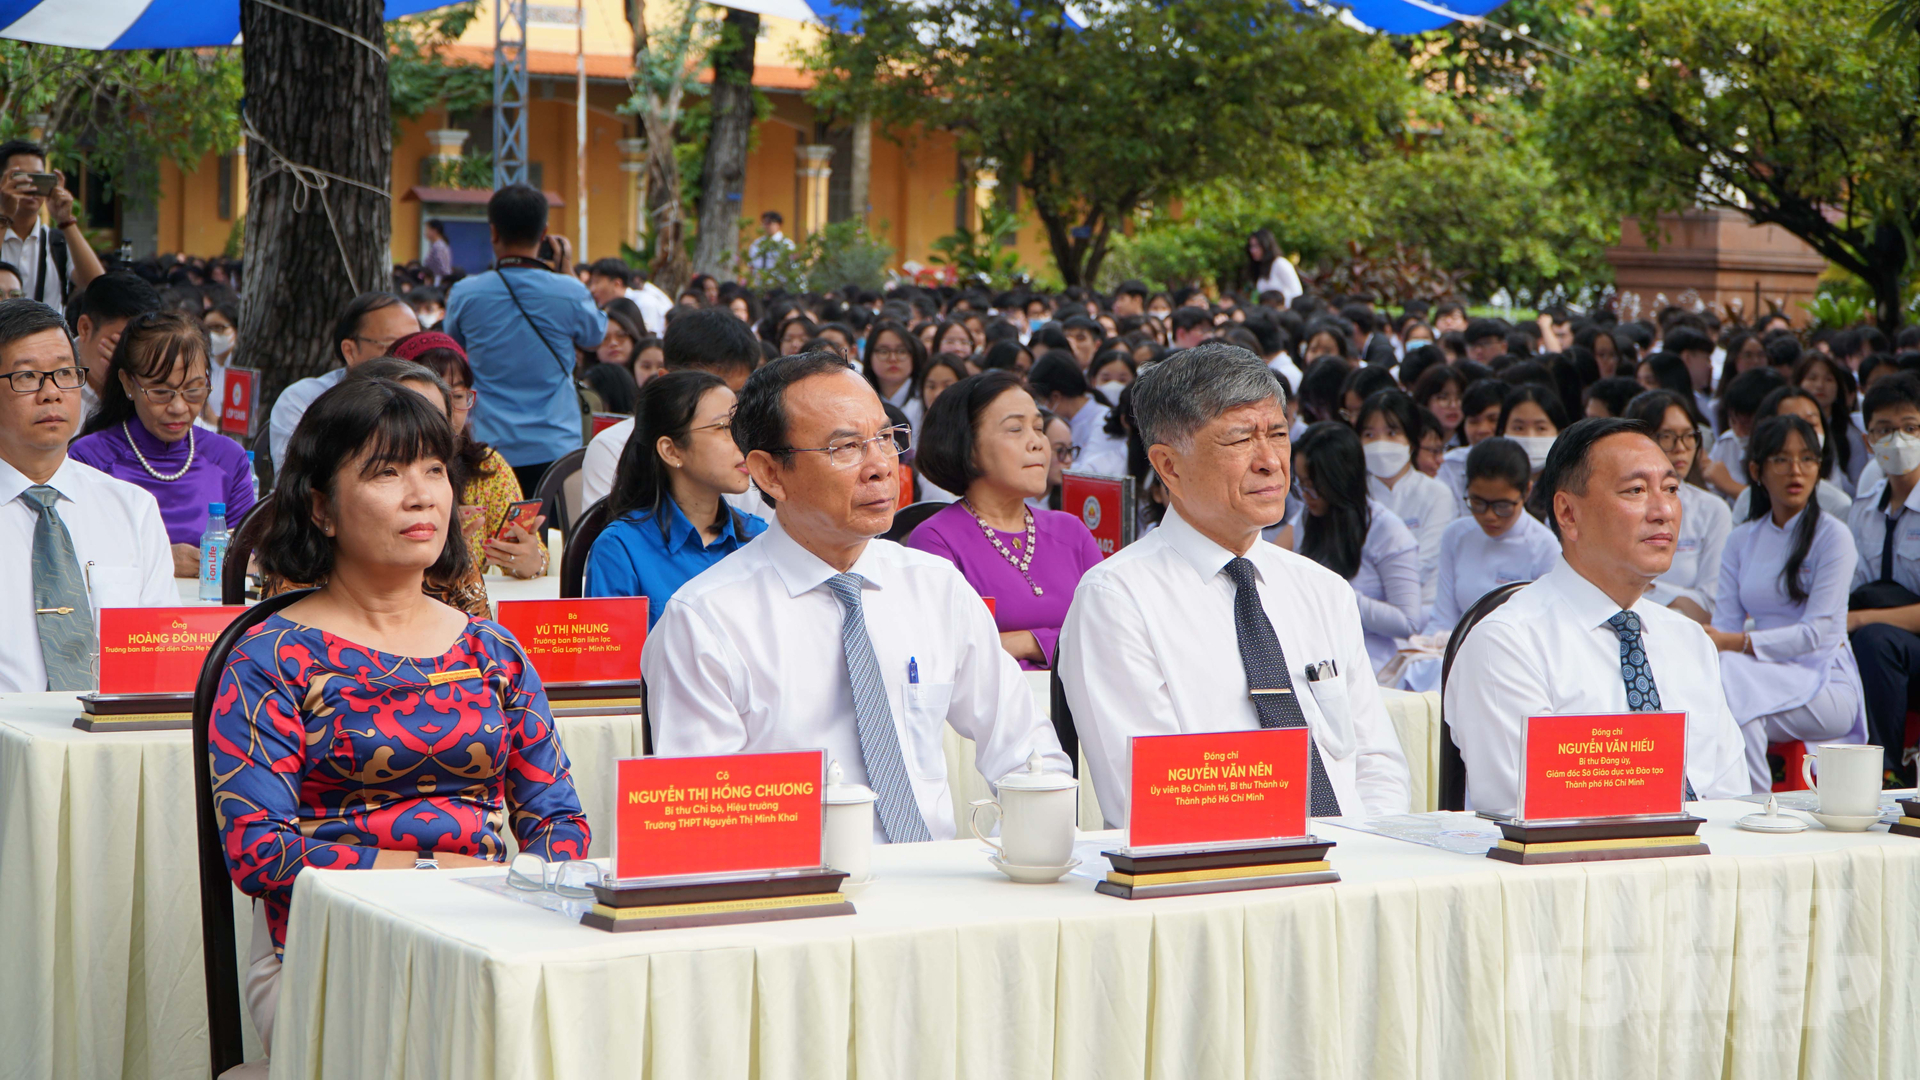 Bí thư Thành ủy TP.HCM Nguyễn Văn Nên (thứ hai từ trái qua) tham dự buổi lễ khai giảng tại trường THPT Nguyễn Thị Minh Khai. Ảnh: Lê Bình.